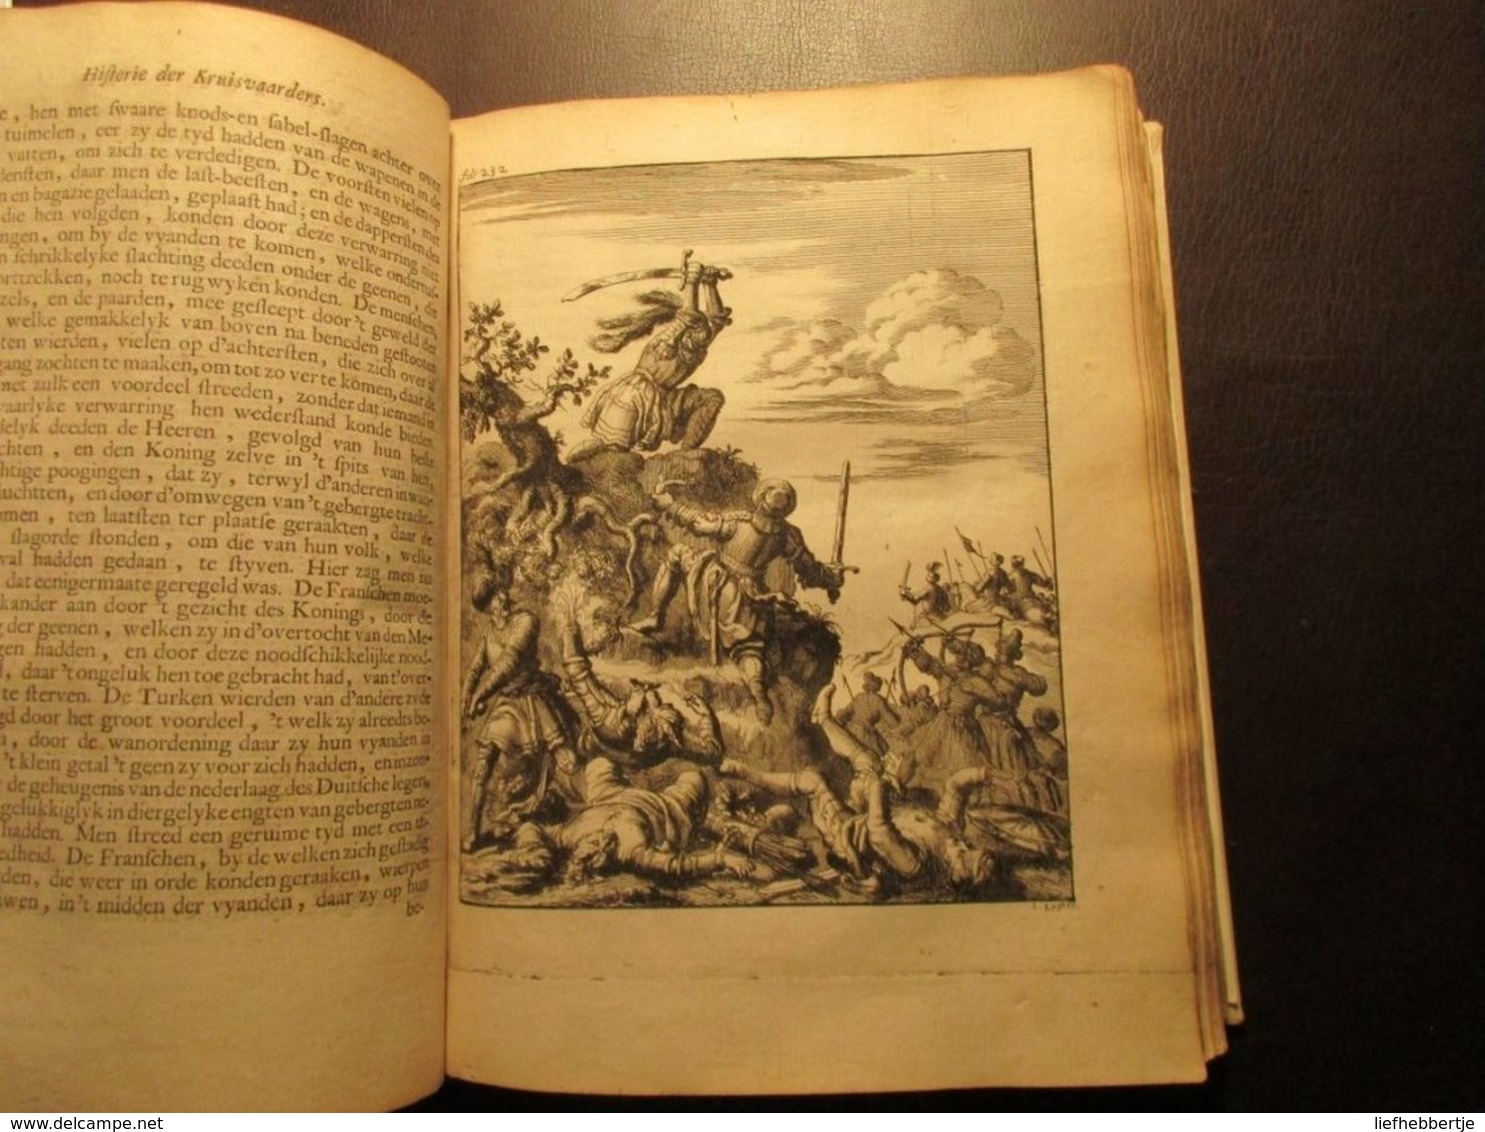 Historie van de kruisvaarders tot de verlossing van het Heilig Land - 1683 - Jeruzalem - tempeliers (?)